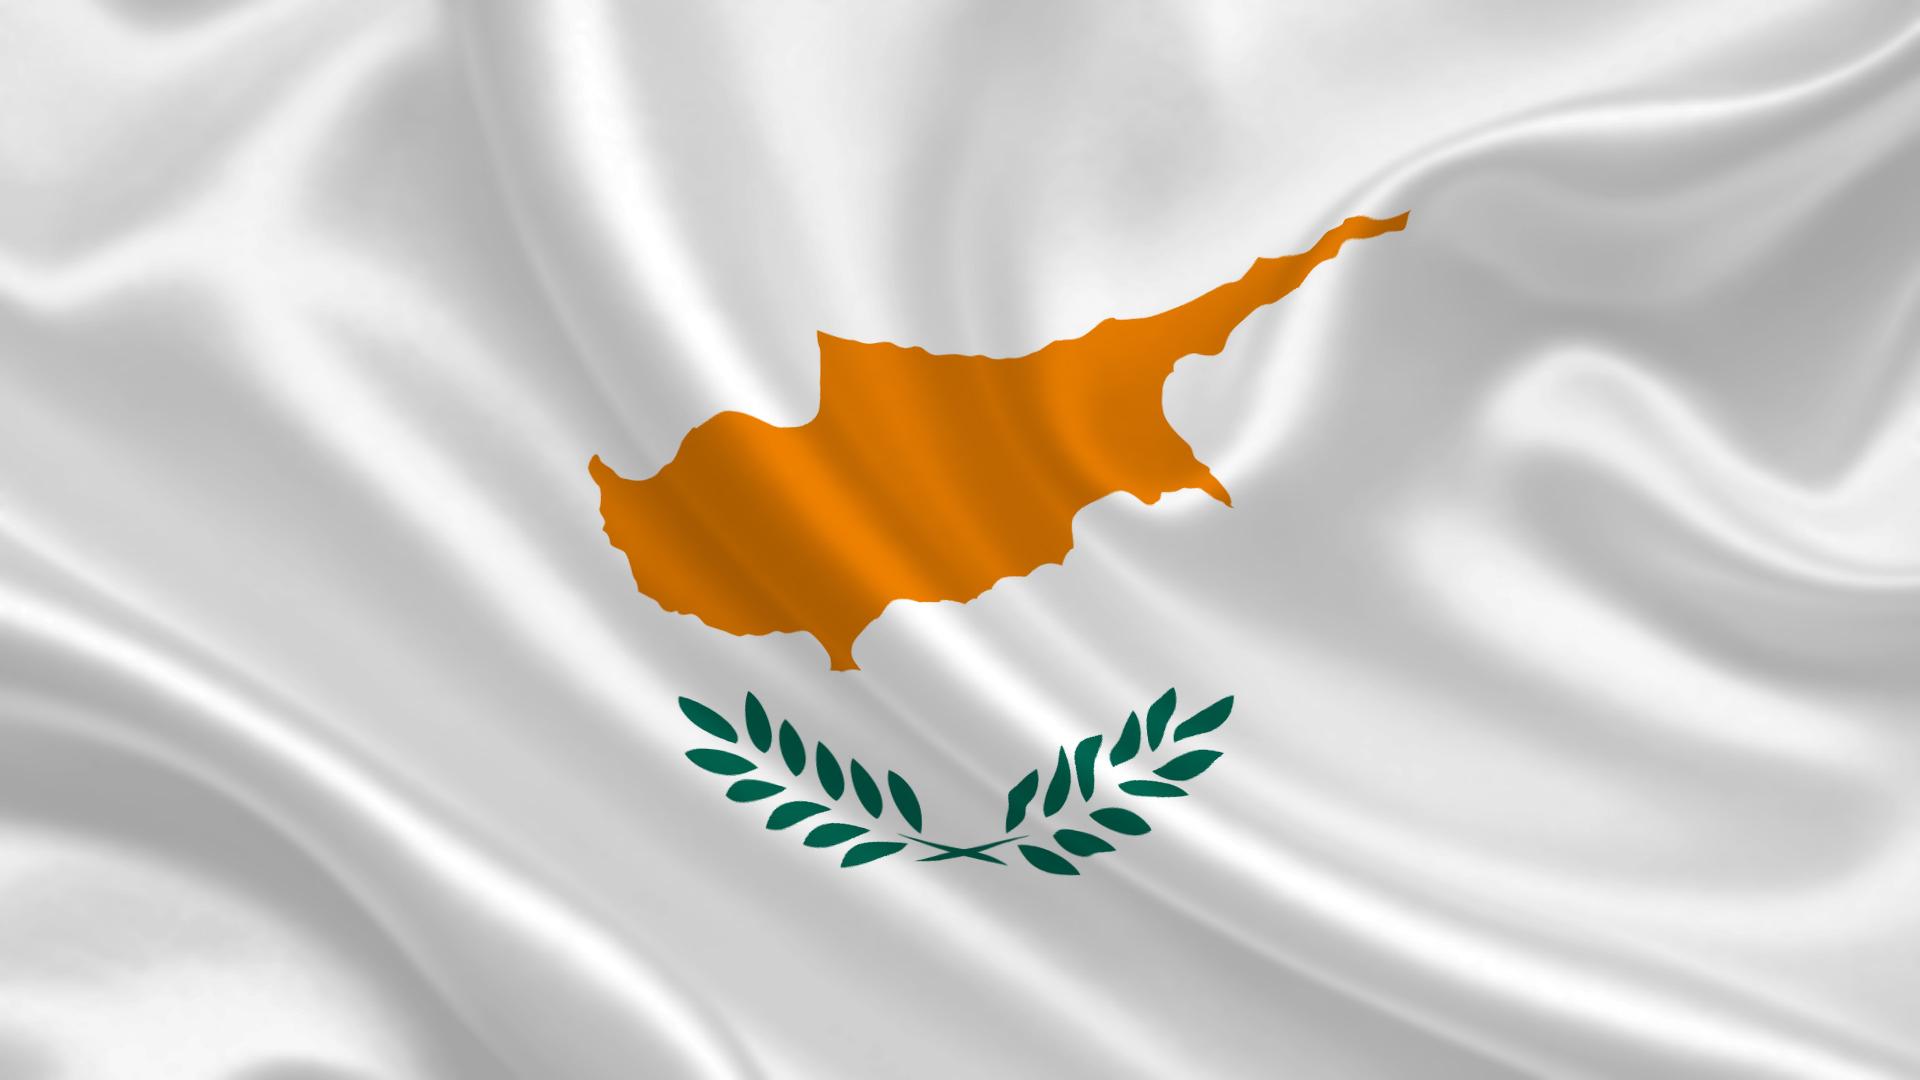 Το ξέρατε; Η Κύπρος είχε το δικό της Εθνικό ύμνο που όμως δεν χρησιμοποιήθηκε ποτέ επίσημα! Ακούστε τον